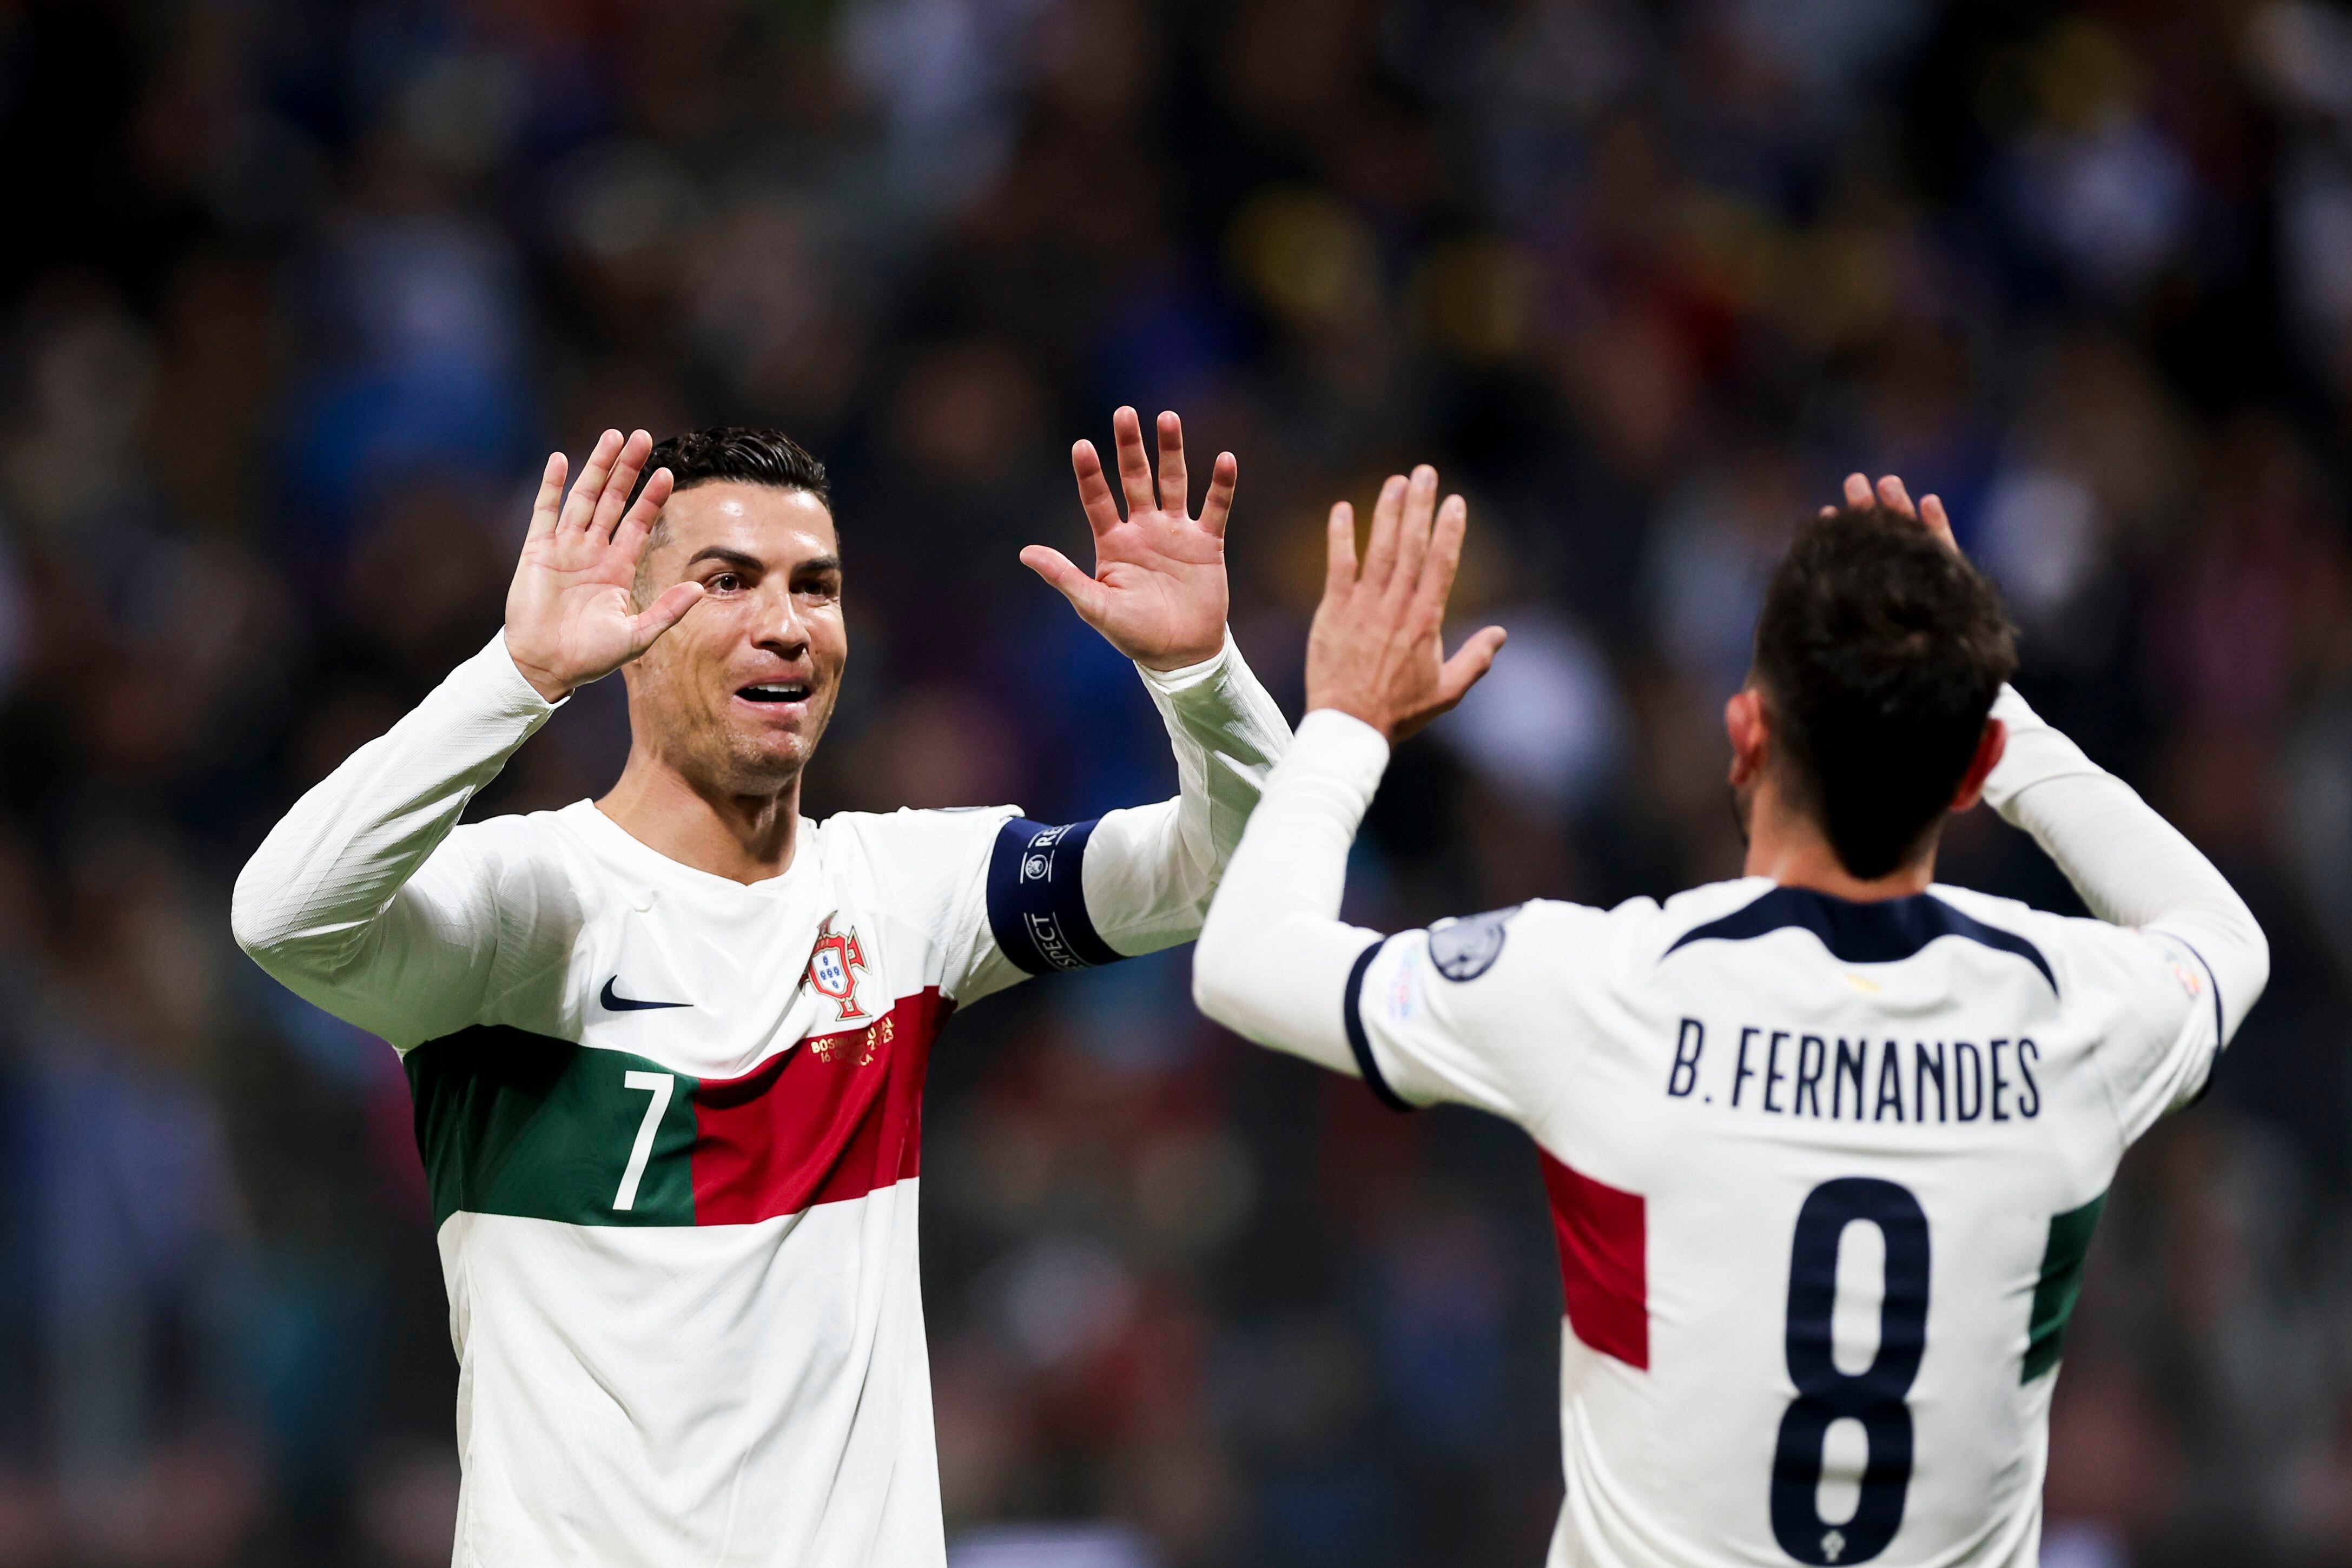 Cristiano Ronaldo celebra un gol con su compañero en la selección de Portugal Bruno Fernandes (R) durante el partido de clasificación para la Eurocopa 2024 contra Bosnia en Zenica. EFE/EPA/JOSE SENA GOULAO

